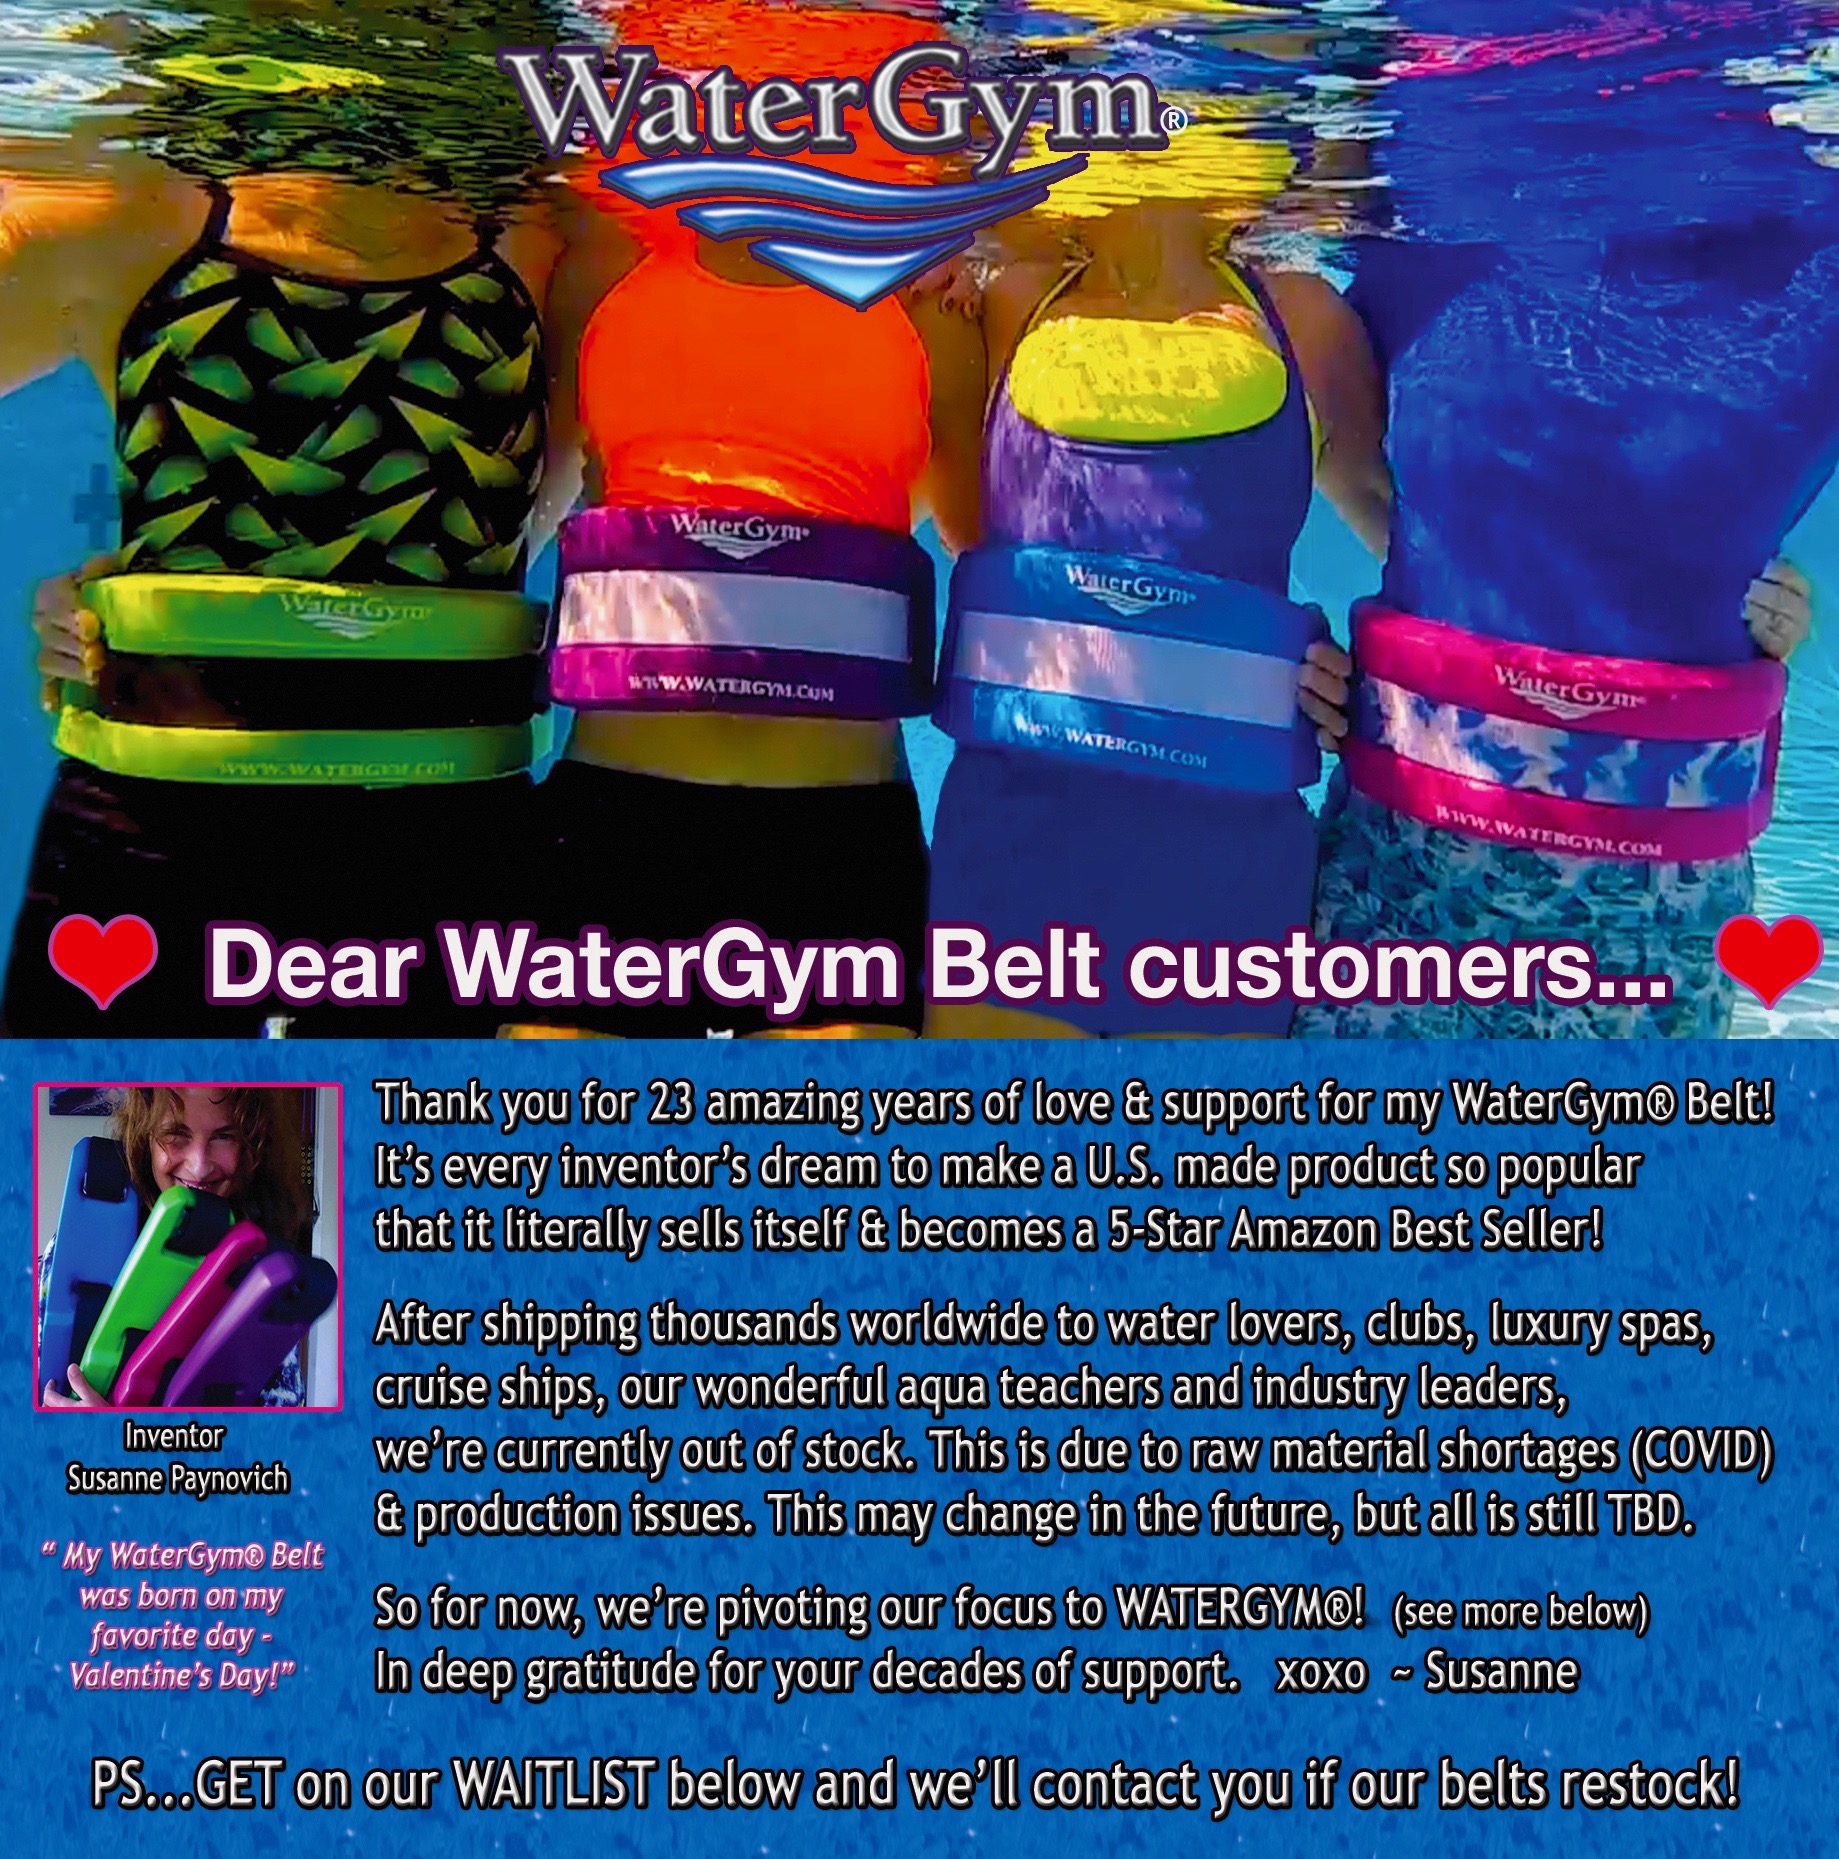 watergym-belt-news.jpeg